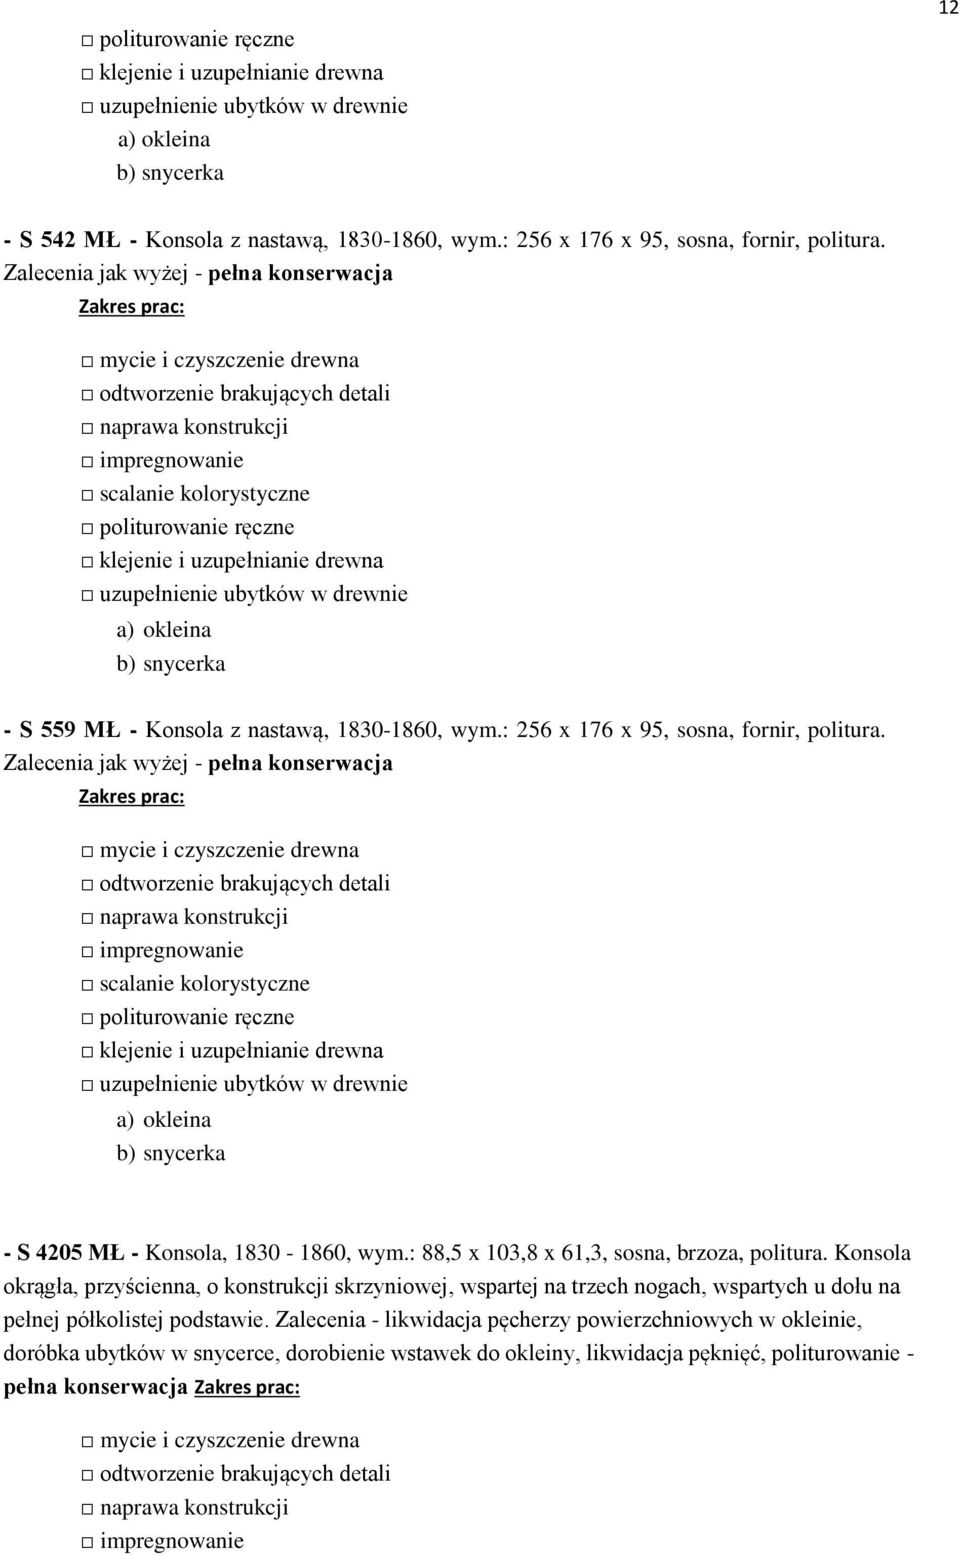 Zalecenia jak wyżej - pełna konserwacja impregnowanie b) snycerka - S 4205 MŁ - Konsola, 1830-1860, wym.: 88,5 x 103,8 x 61,3, sosna, brzoza, politura.